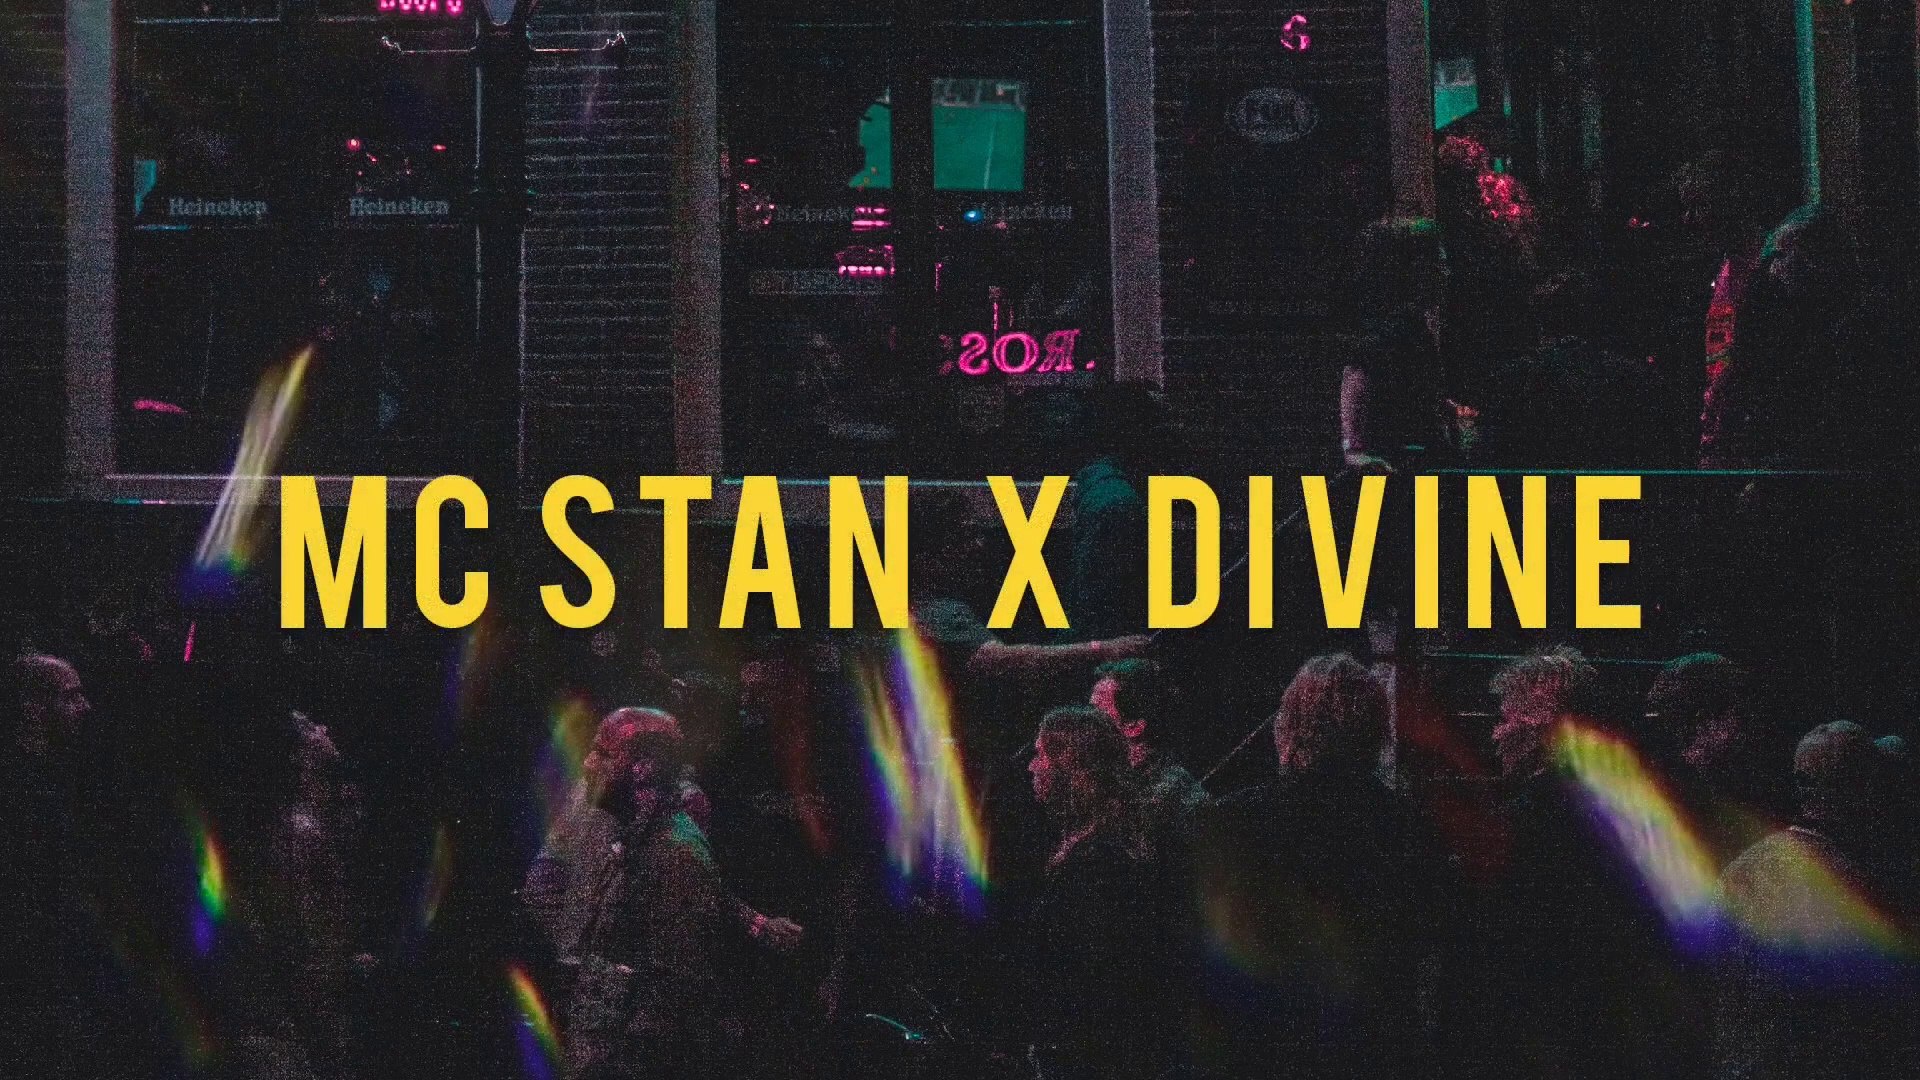 MC STAN - INSAAN MUSIC VIDEO [BREAKDOWN & EXPLAINED ]. Full video